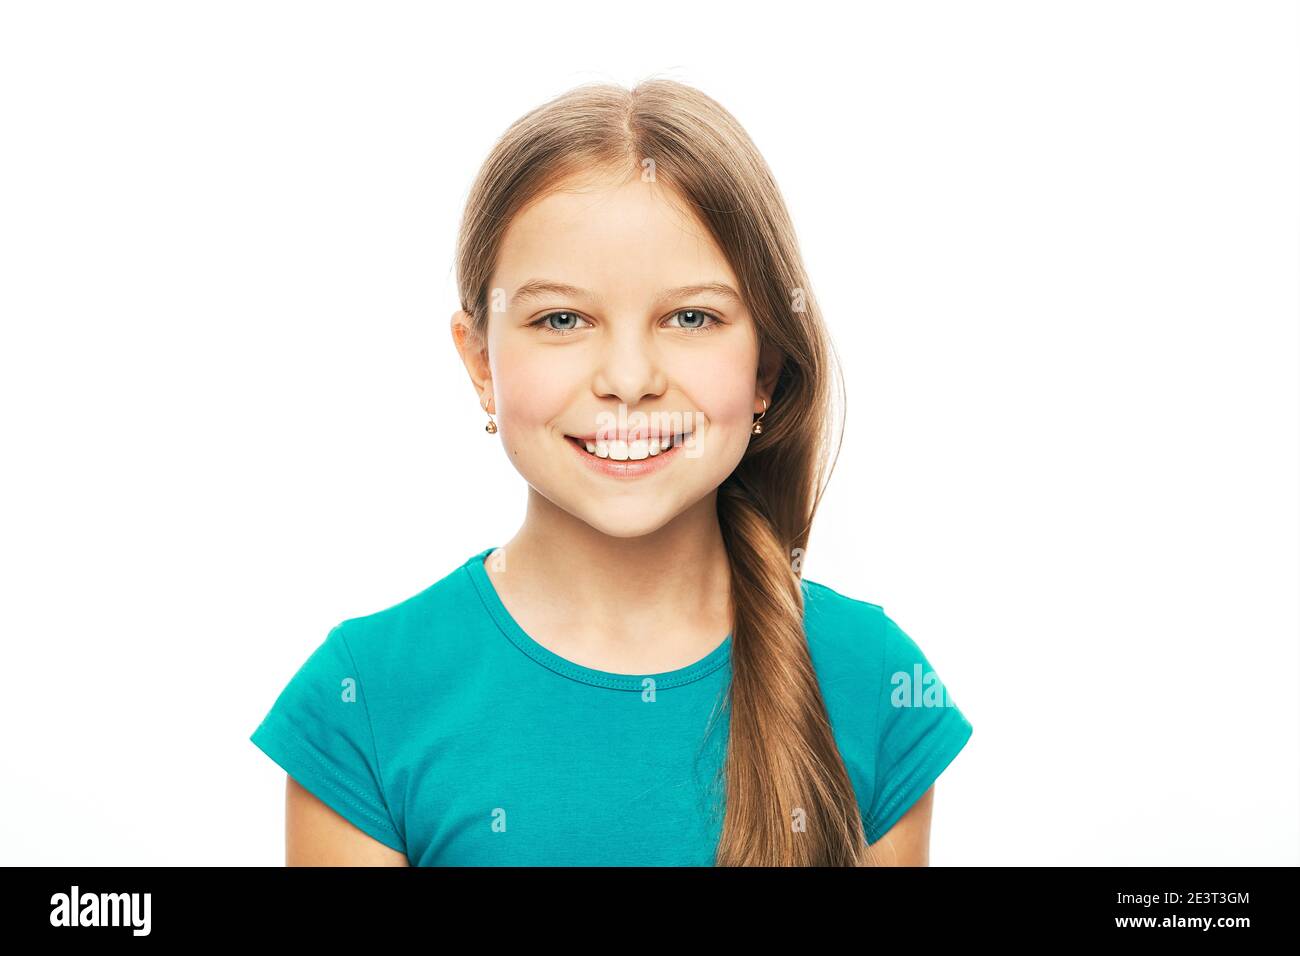 Porträt eines schönen kaukasischen Mädchen mit einem weißen gesunden Lächeln, isoliert auf weißem Hintergrund. Kind toothy Lächeln Stockfoto